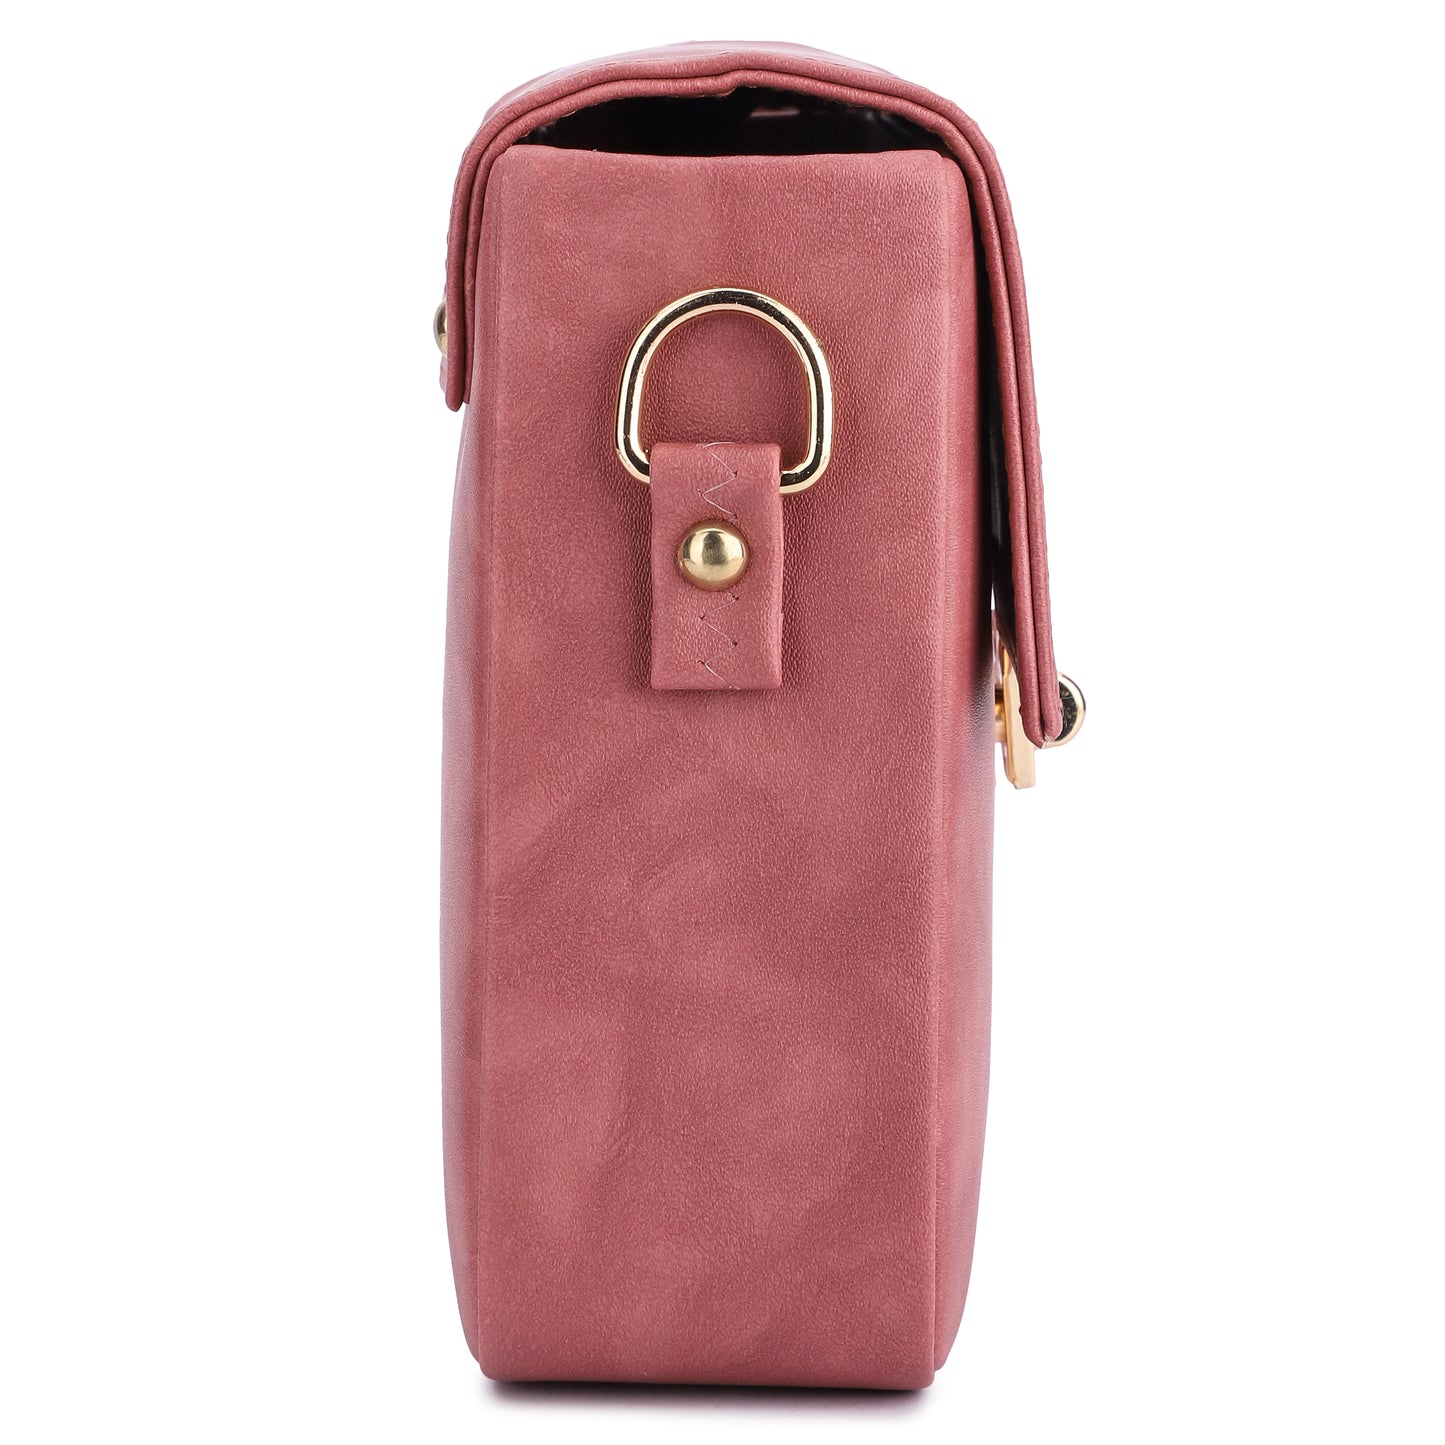 Feman City Stride Sling Bag - L Pink